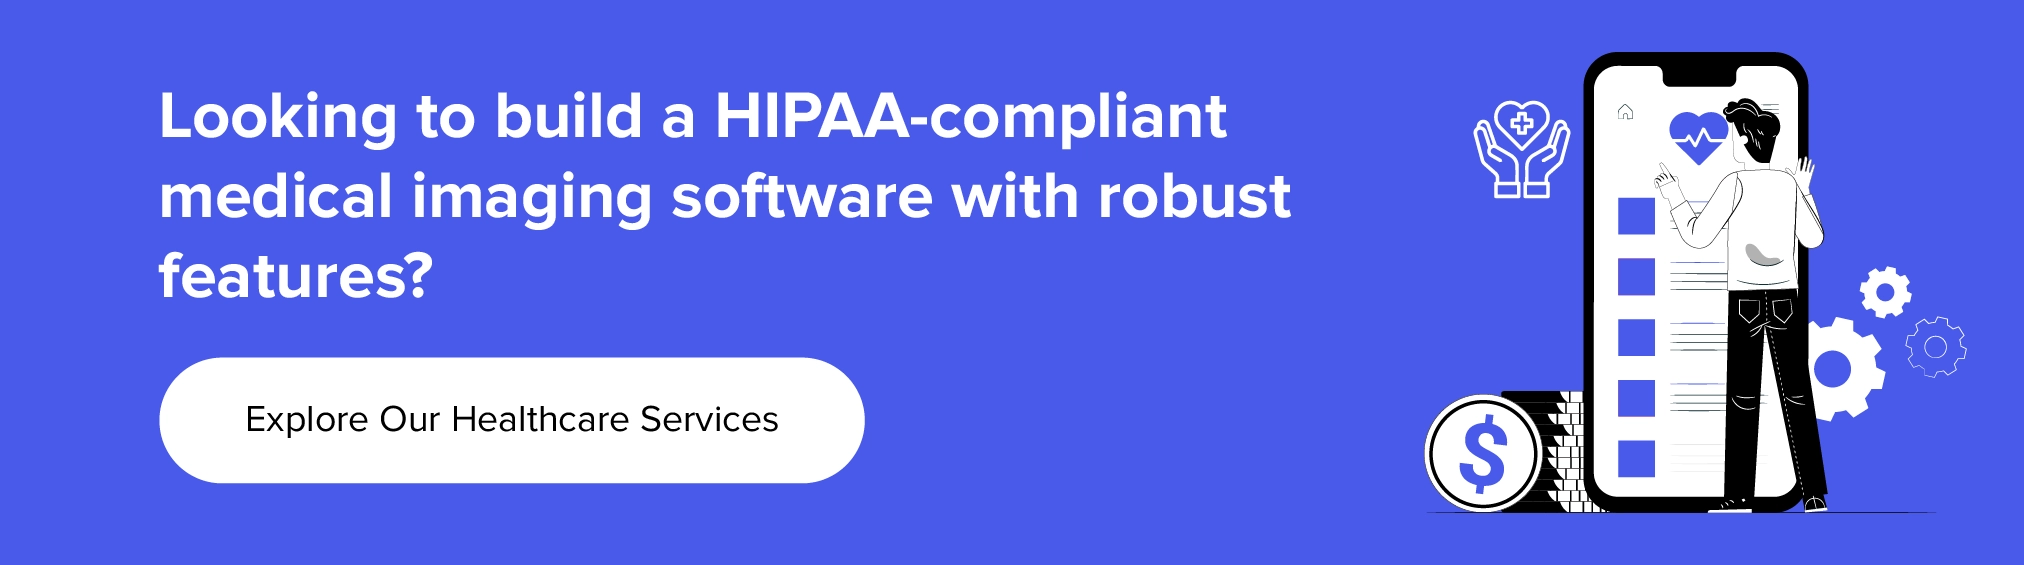 colabore con nosotros para crear un software de imágenes médicas compatible con HIPAA